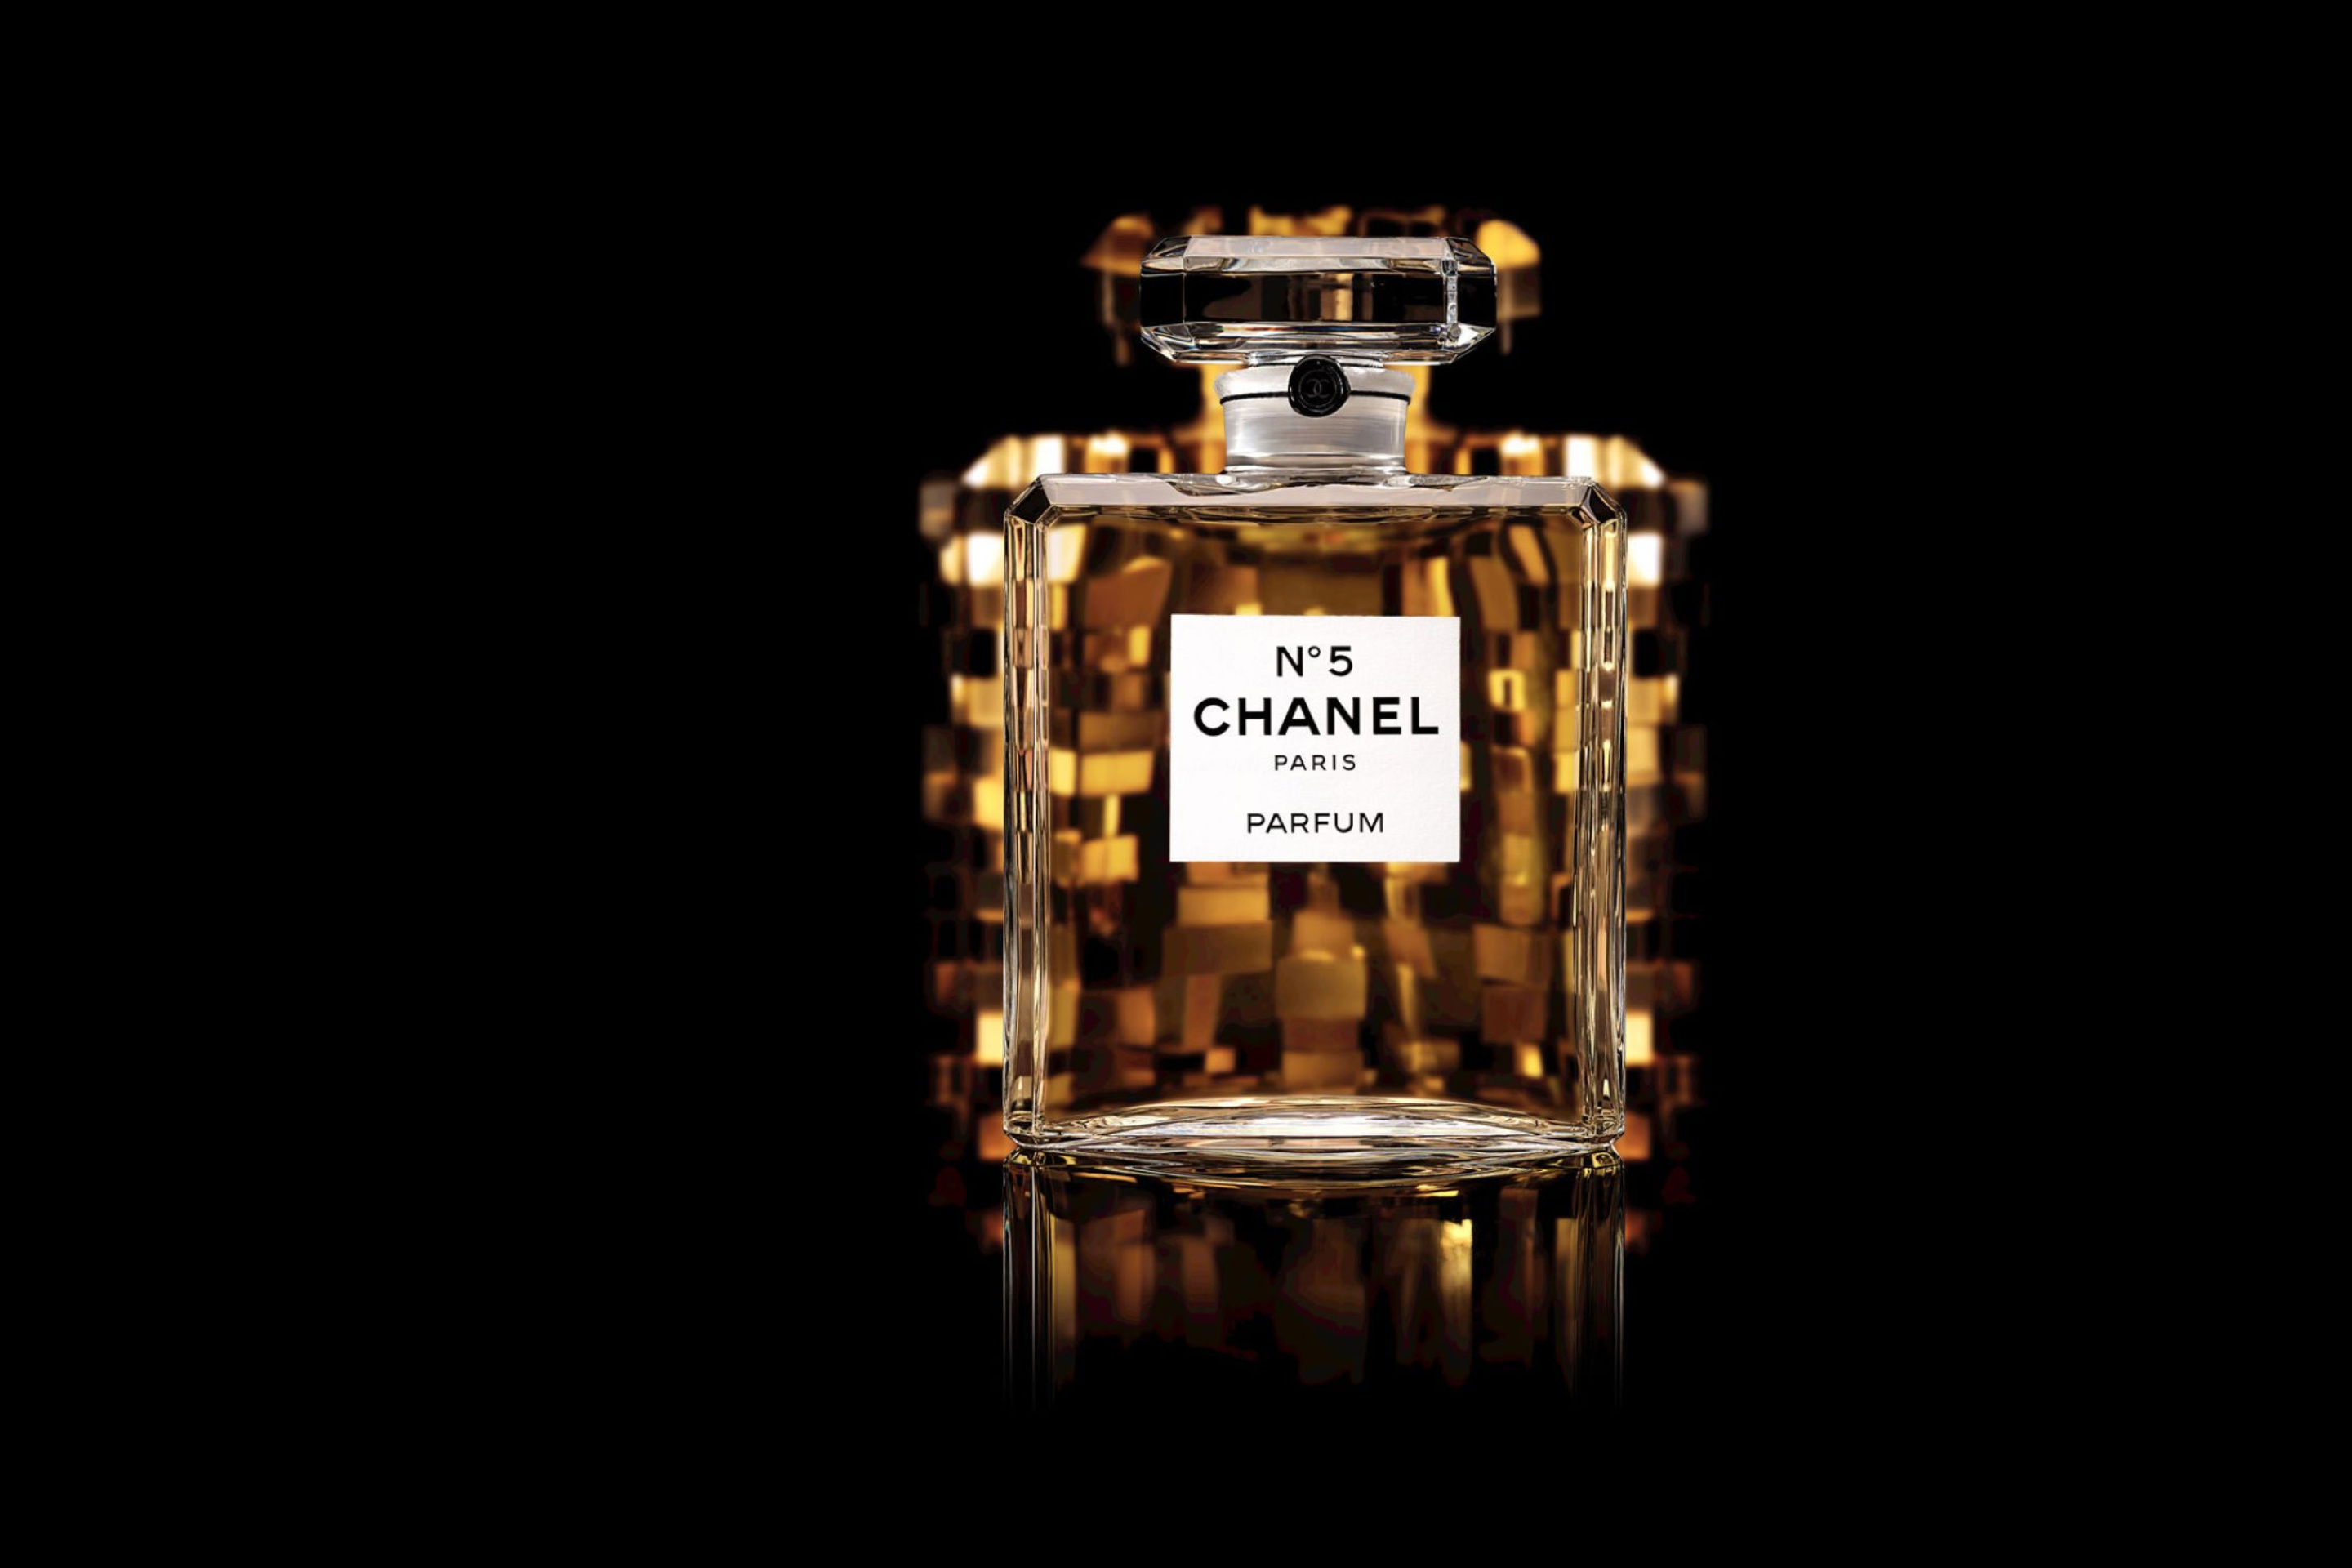 Обои Chanel 5 Fragrance Perfume 2880x1920